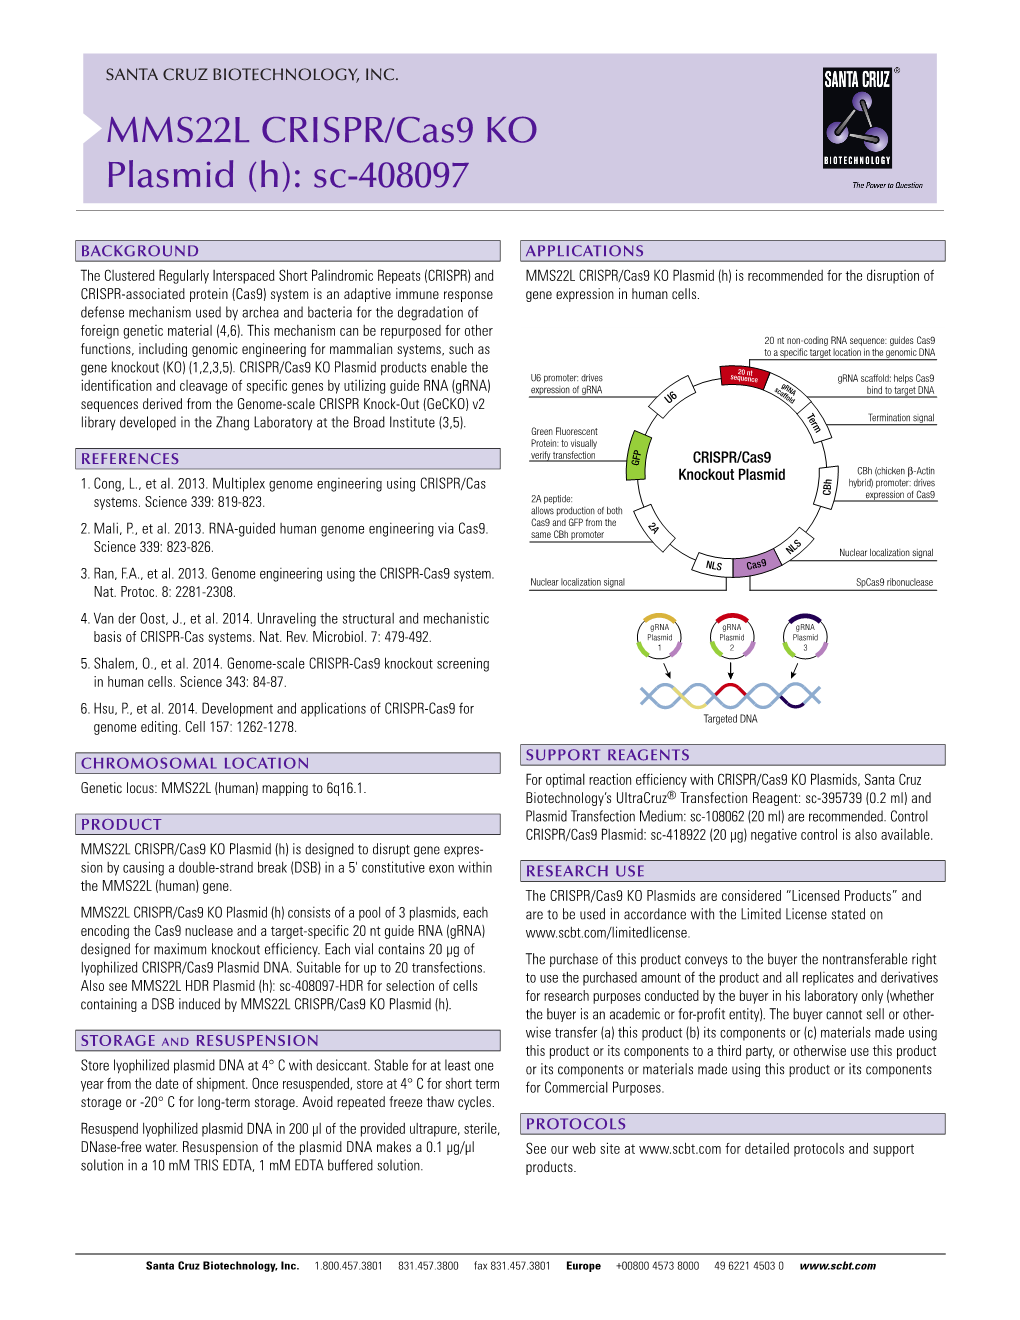 MMS22L CRISPR/Cas9 KO Plasmid (H): Sc-408097